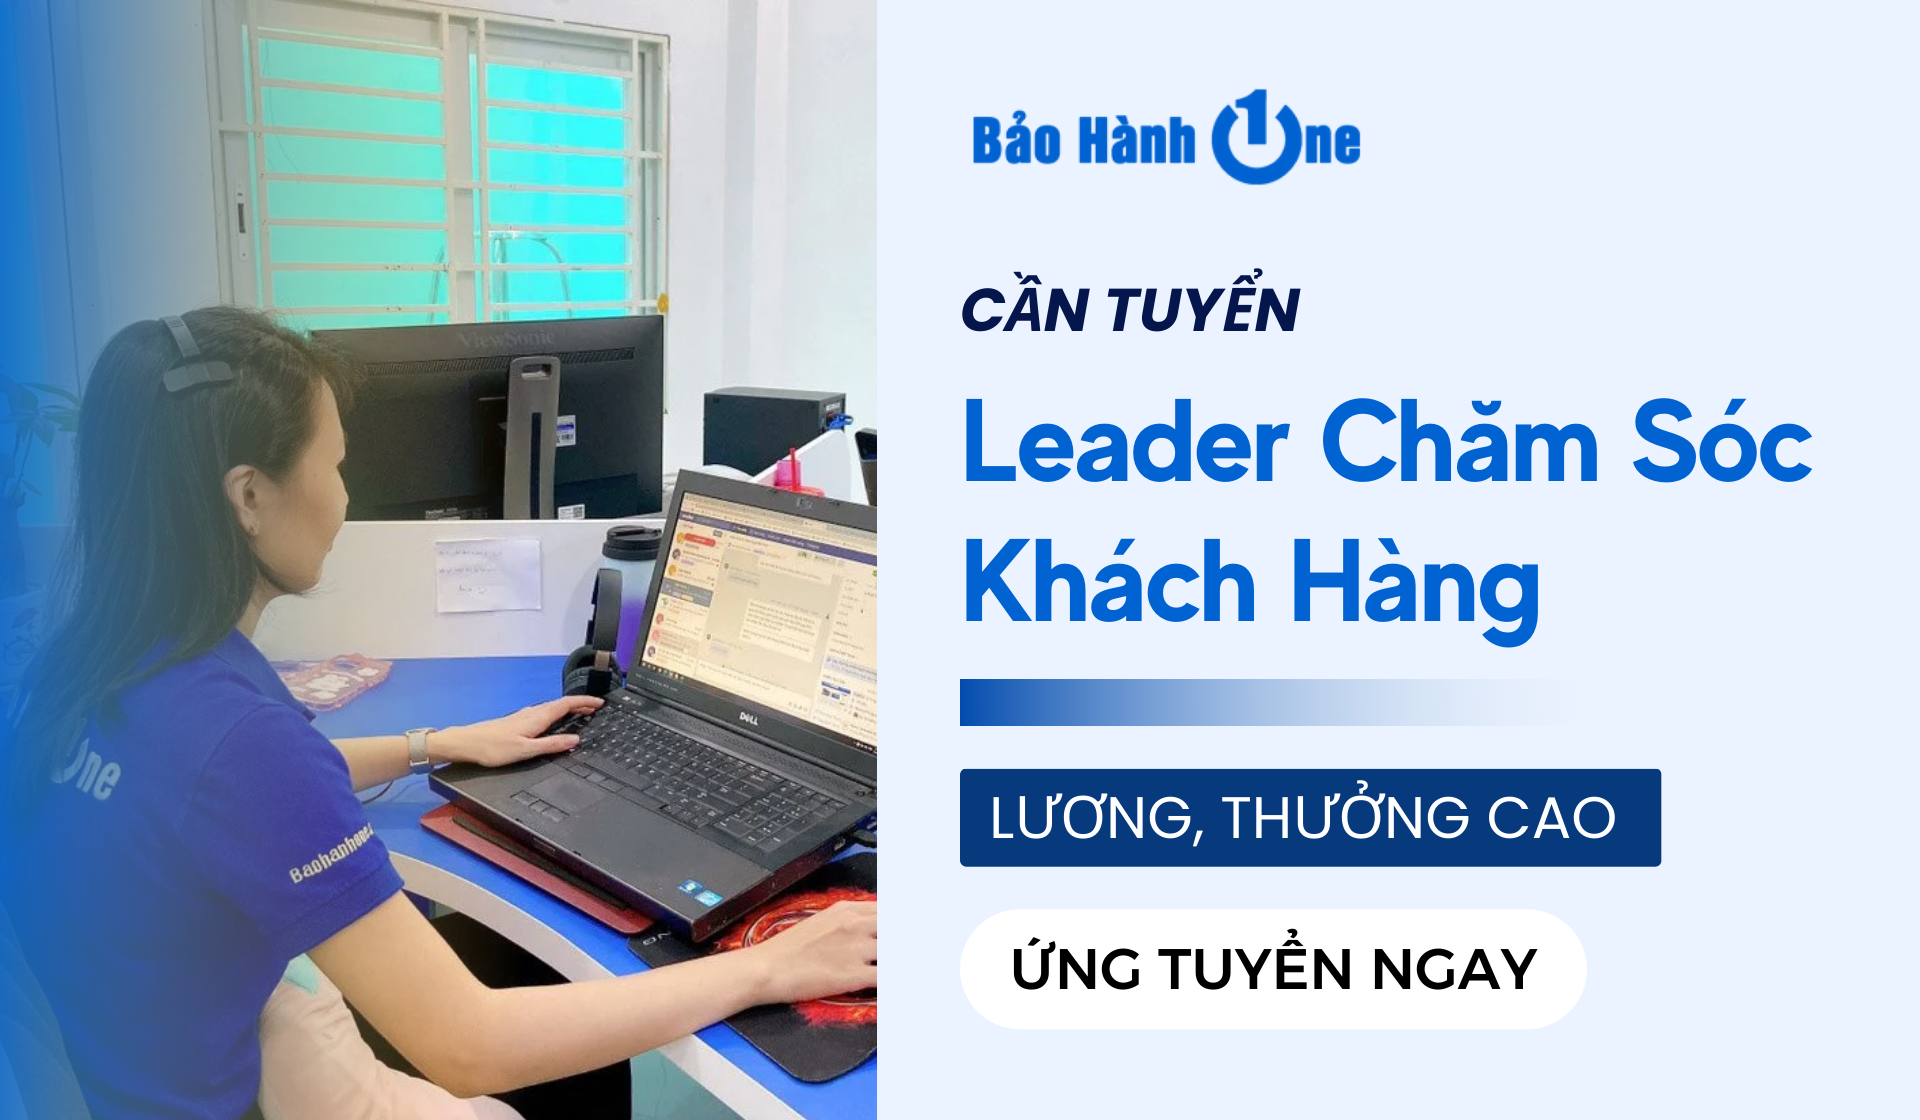 Tuyển dụng Leader (Trưởng phòng) Chăm Sóc Khách Hàng làm việc tại Tân Phú, Hồ Chí Minh